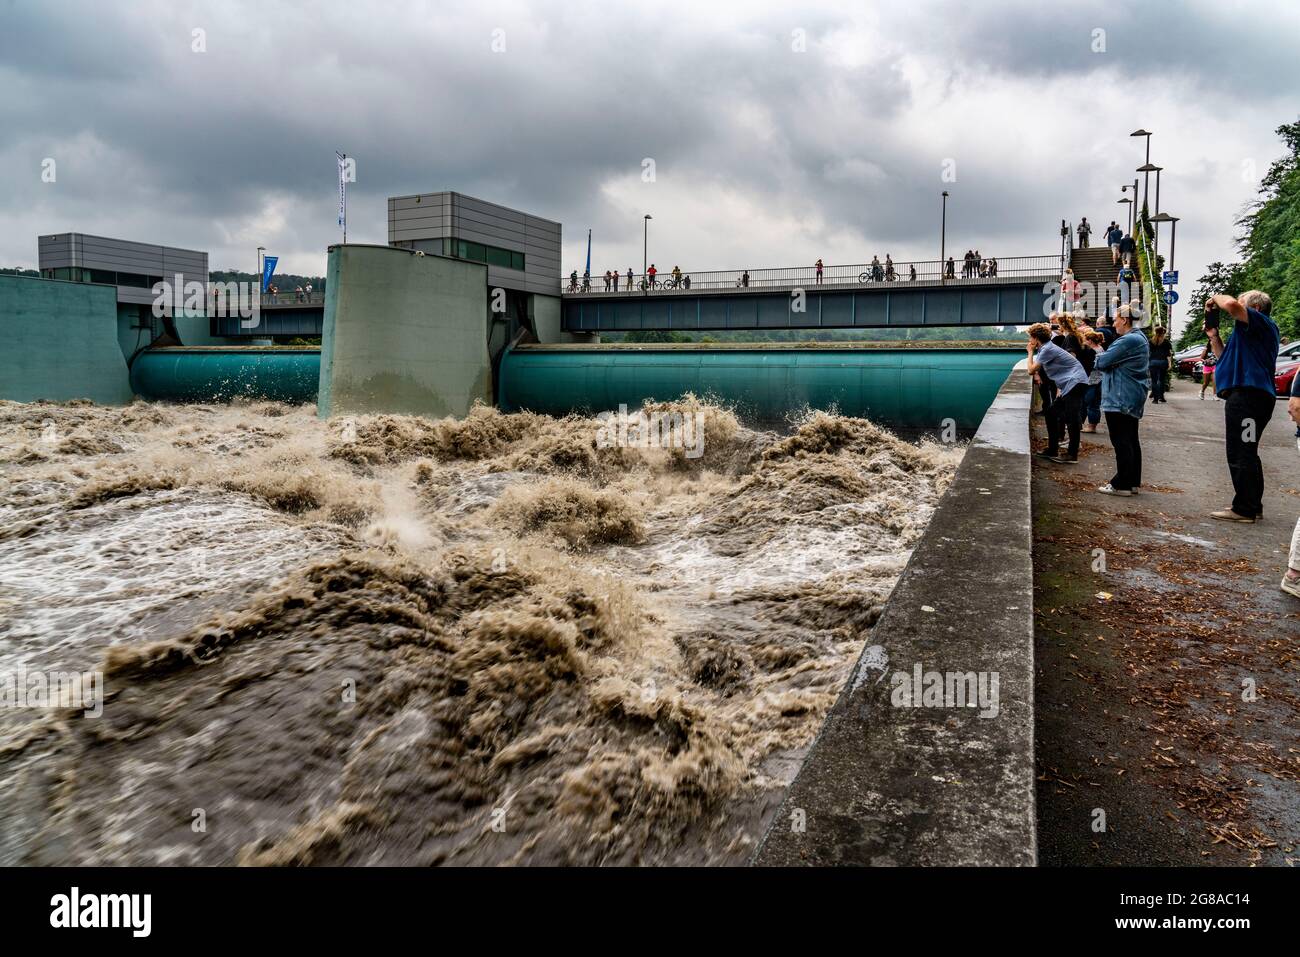 Wehr des Baldeneysee in Essen, die Wassermassen brüllen durch die offenen Wehre, Hochwasser an der Ruhr, nach langen heftigen Regenfällen kam der Fluss aus mir heraus Stockfoto